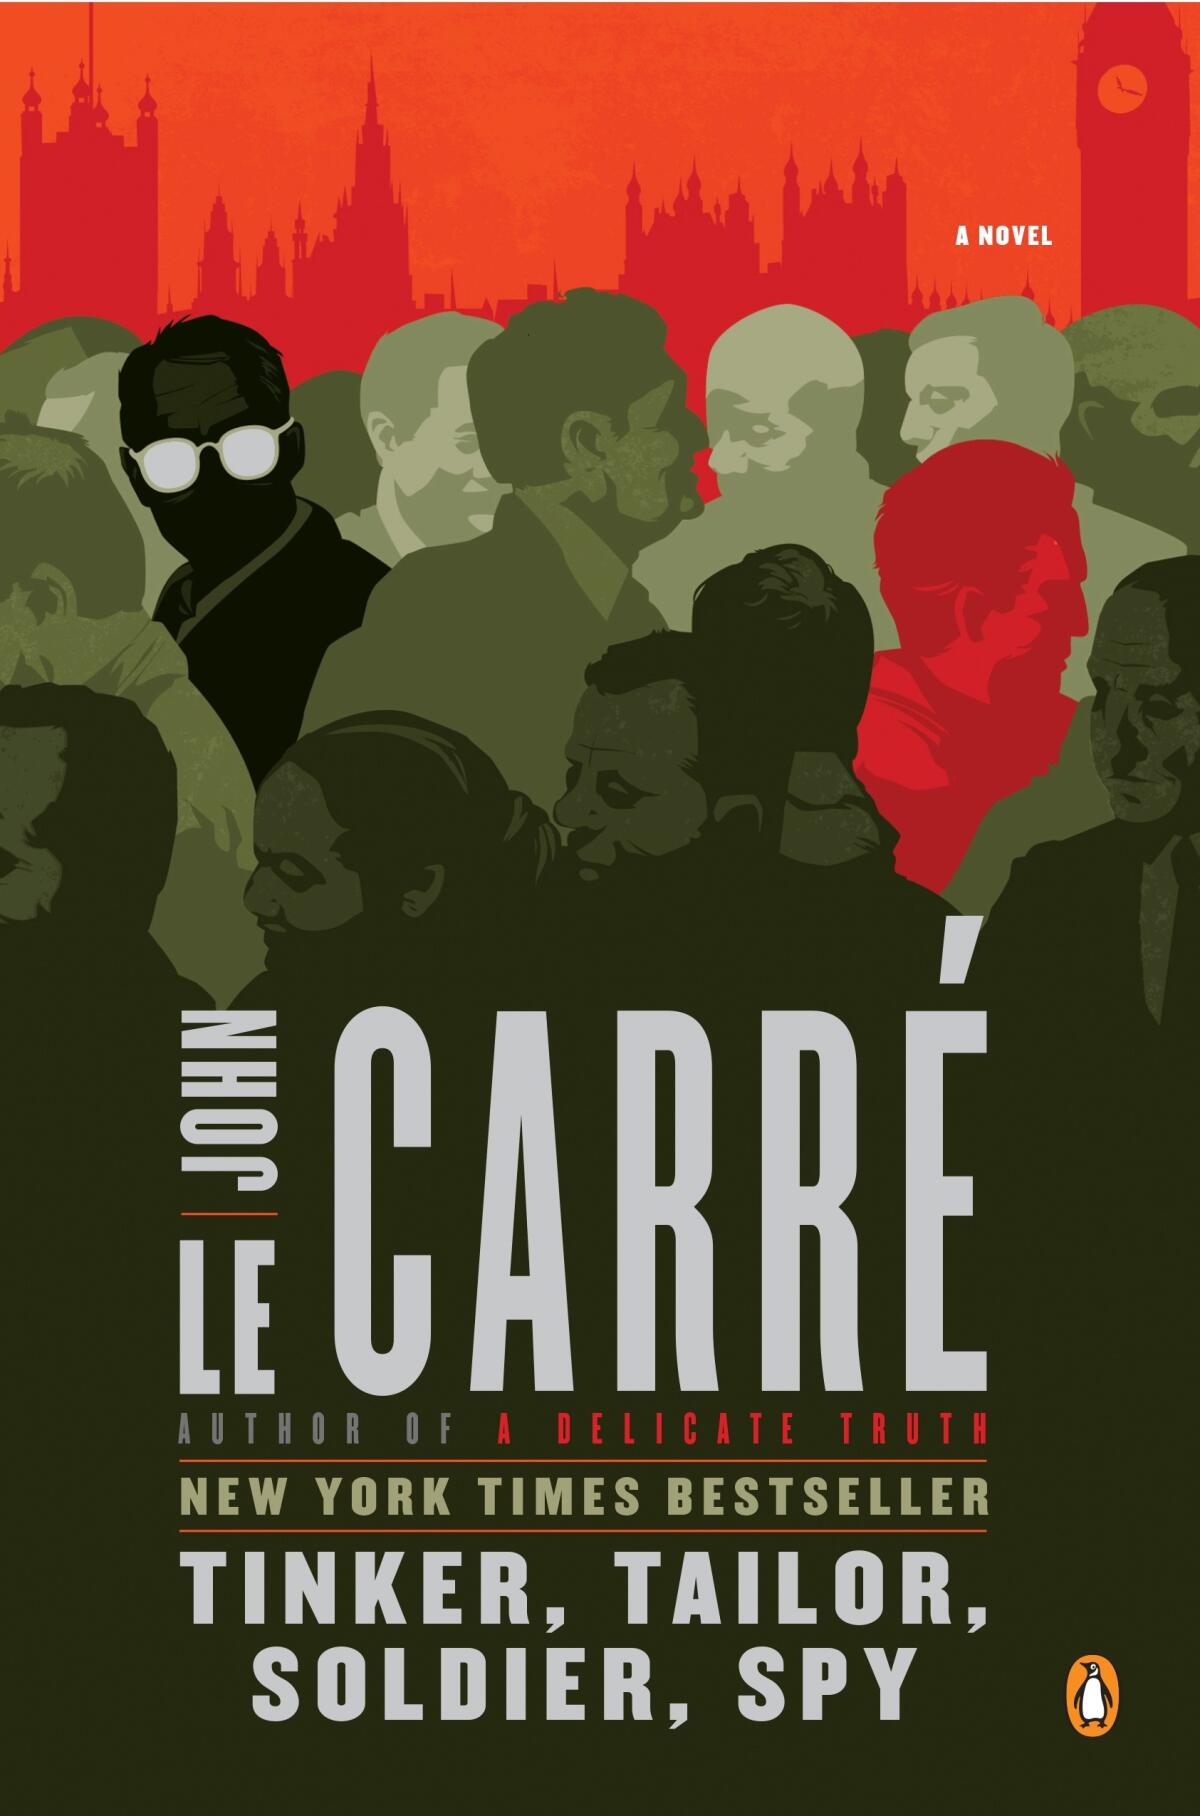 John le Carré’s “Tinker, Tailor, Soldier, Spy."